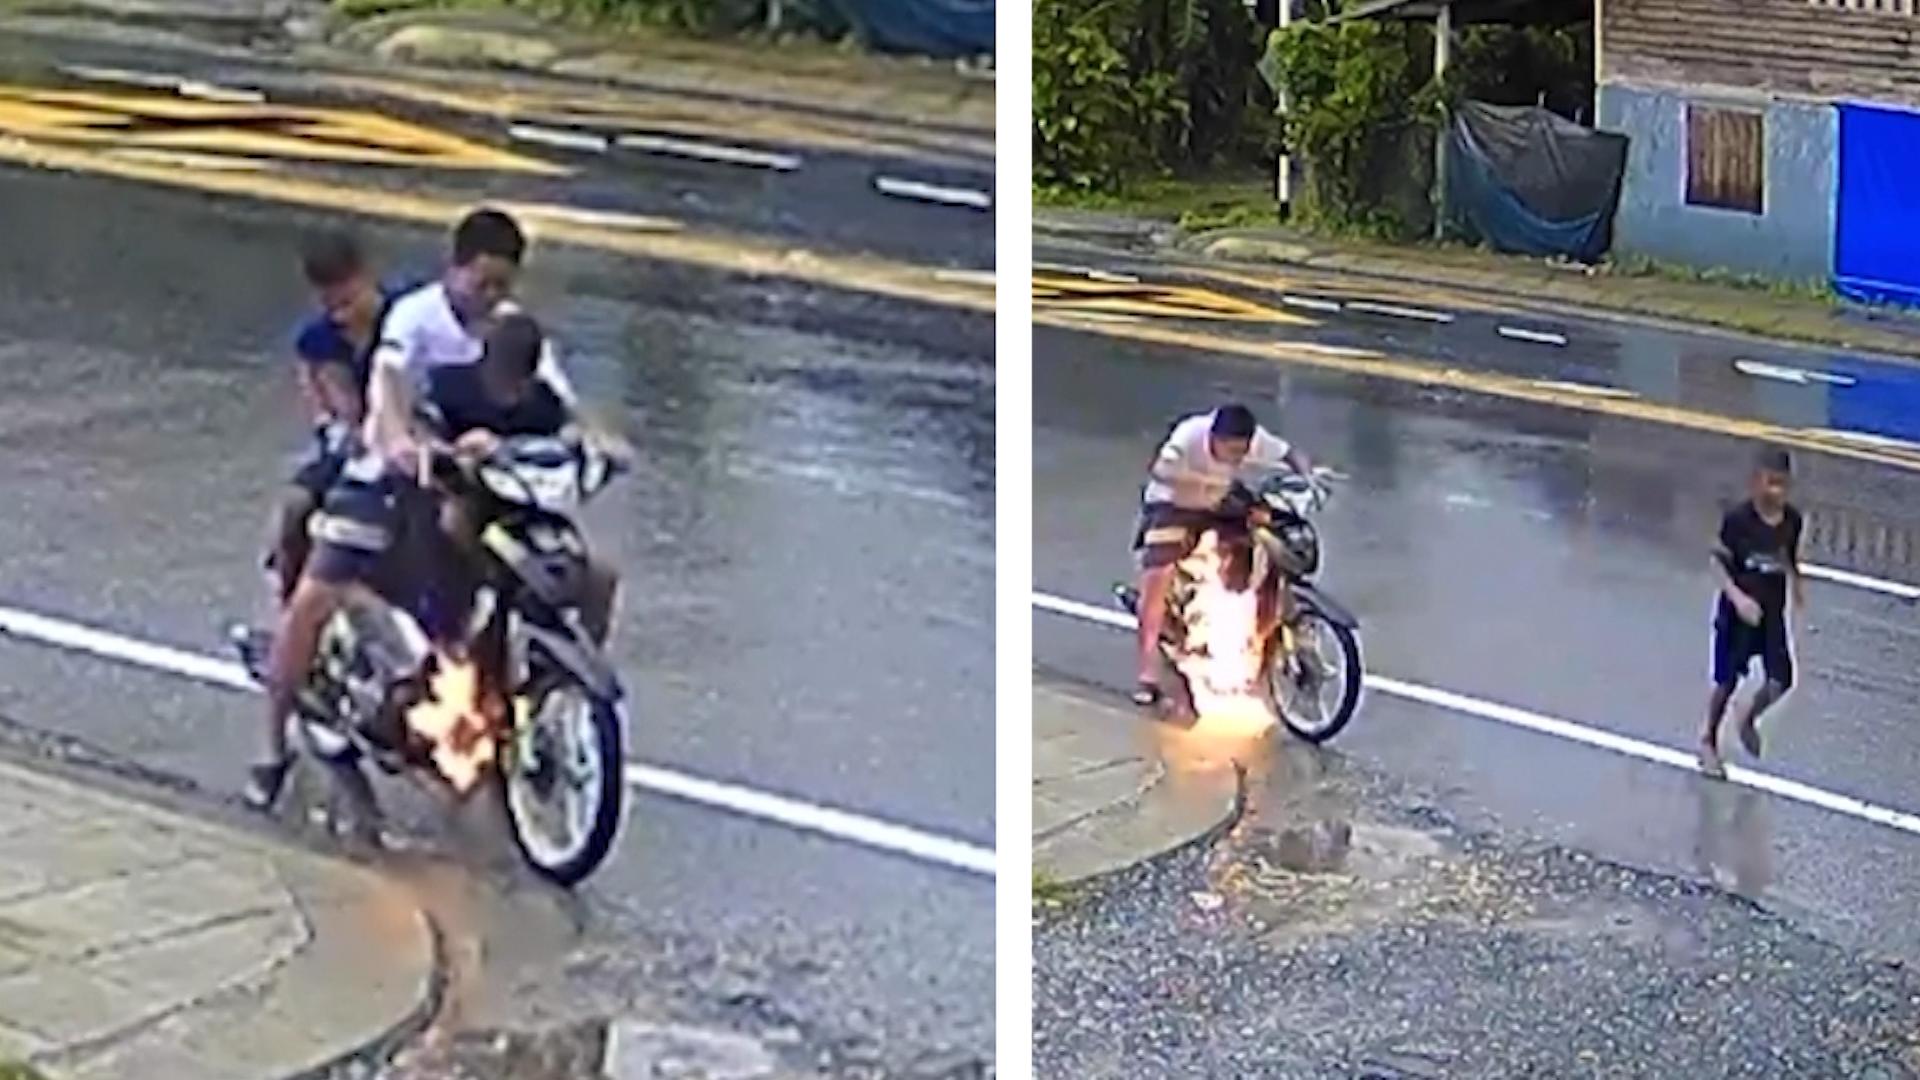 De repente, los jóvenes ven sus vidas en peligro y el scooter se incendia.